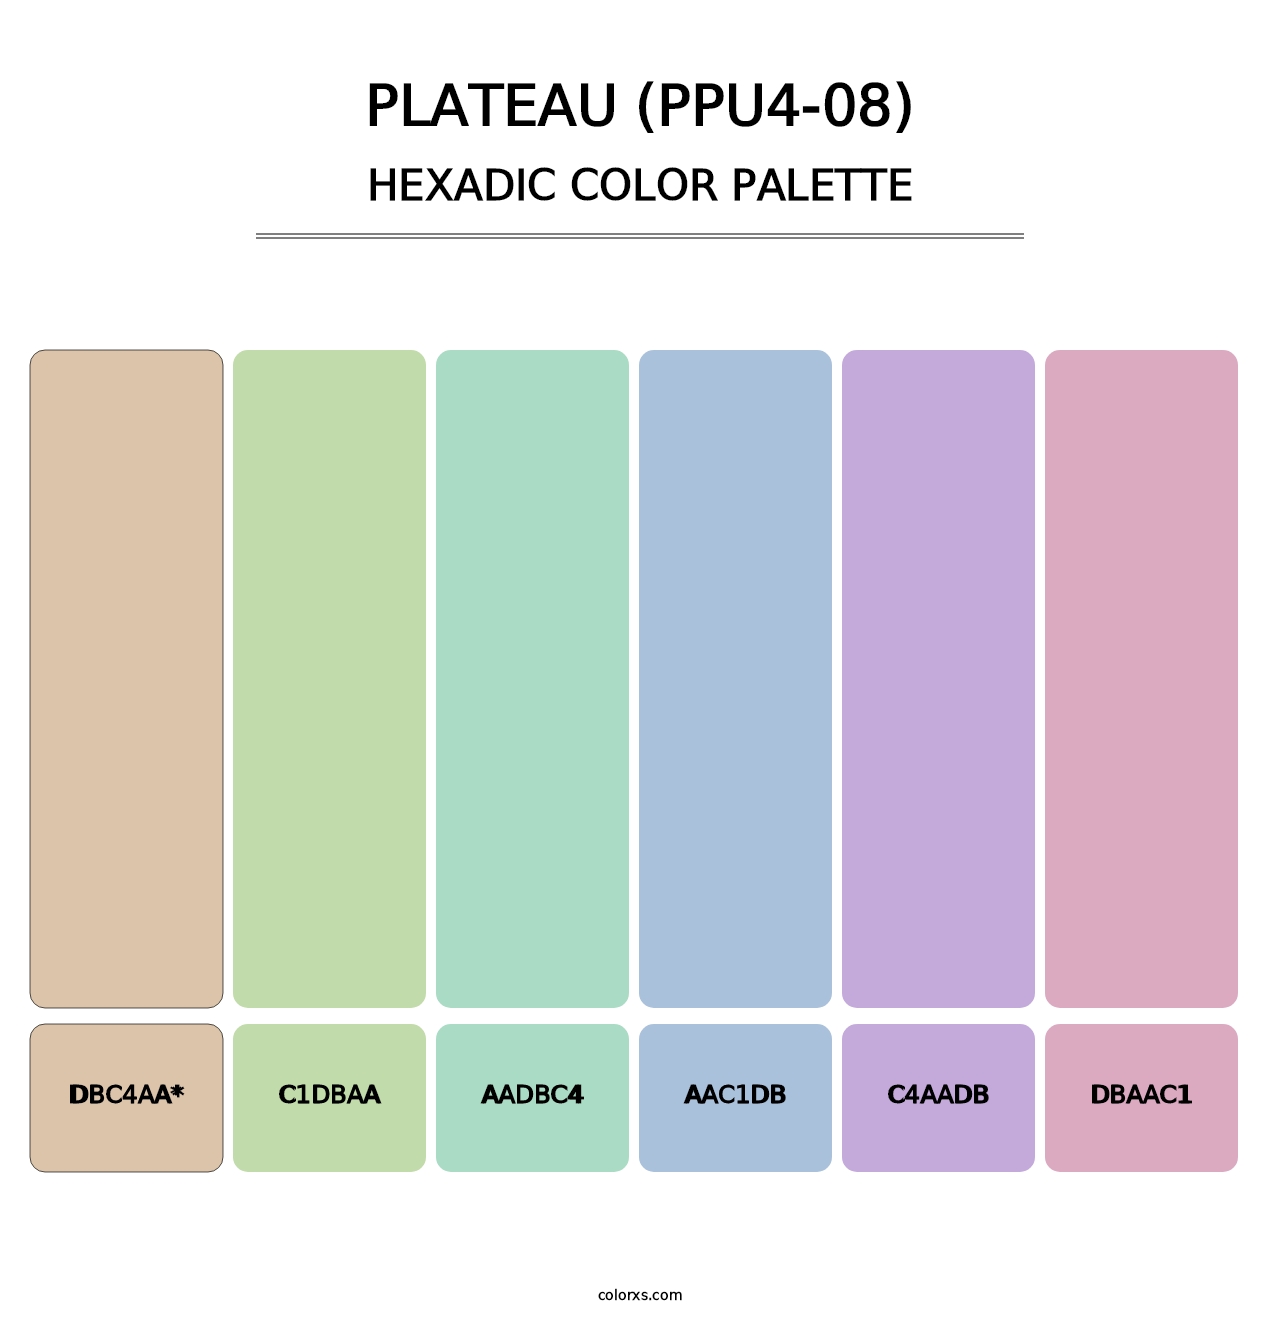 Plateau (PPU4-08) - Hexadic Color Palette